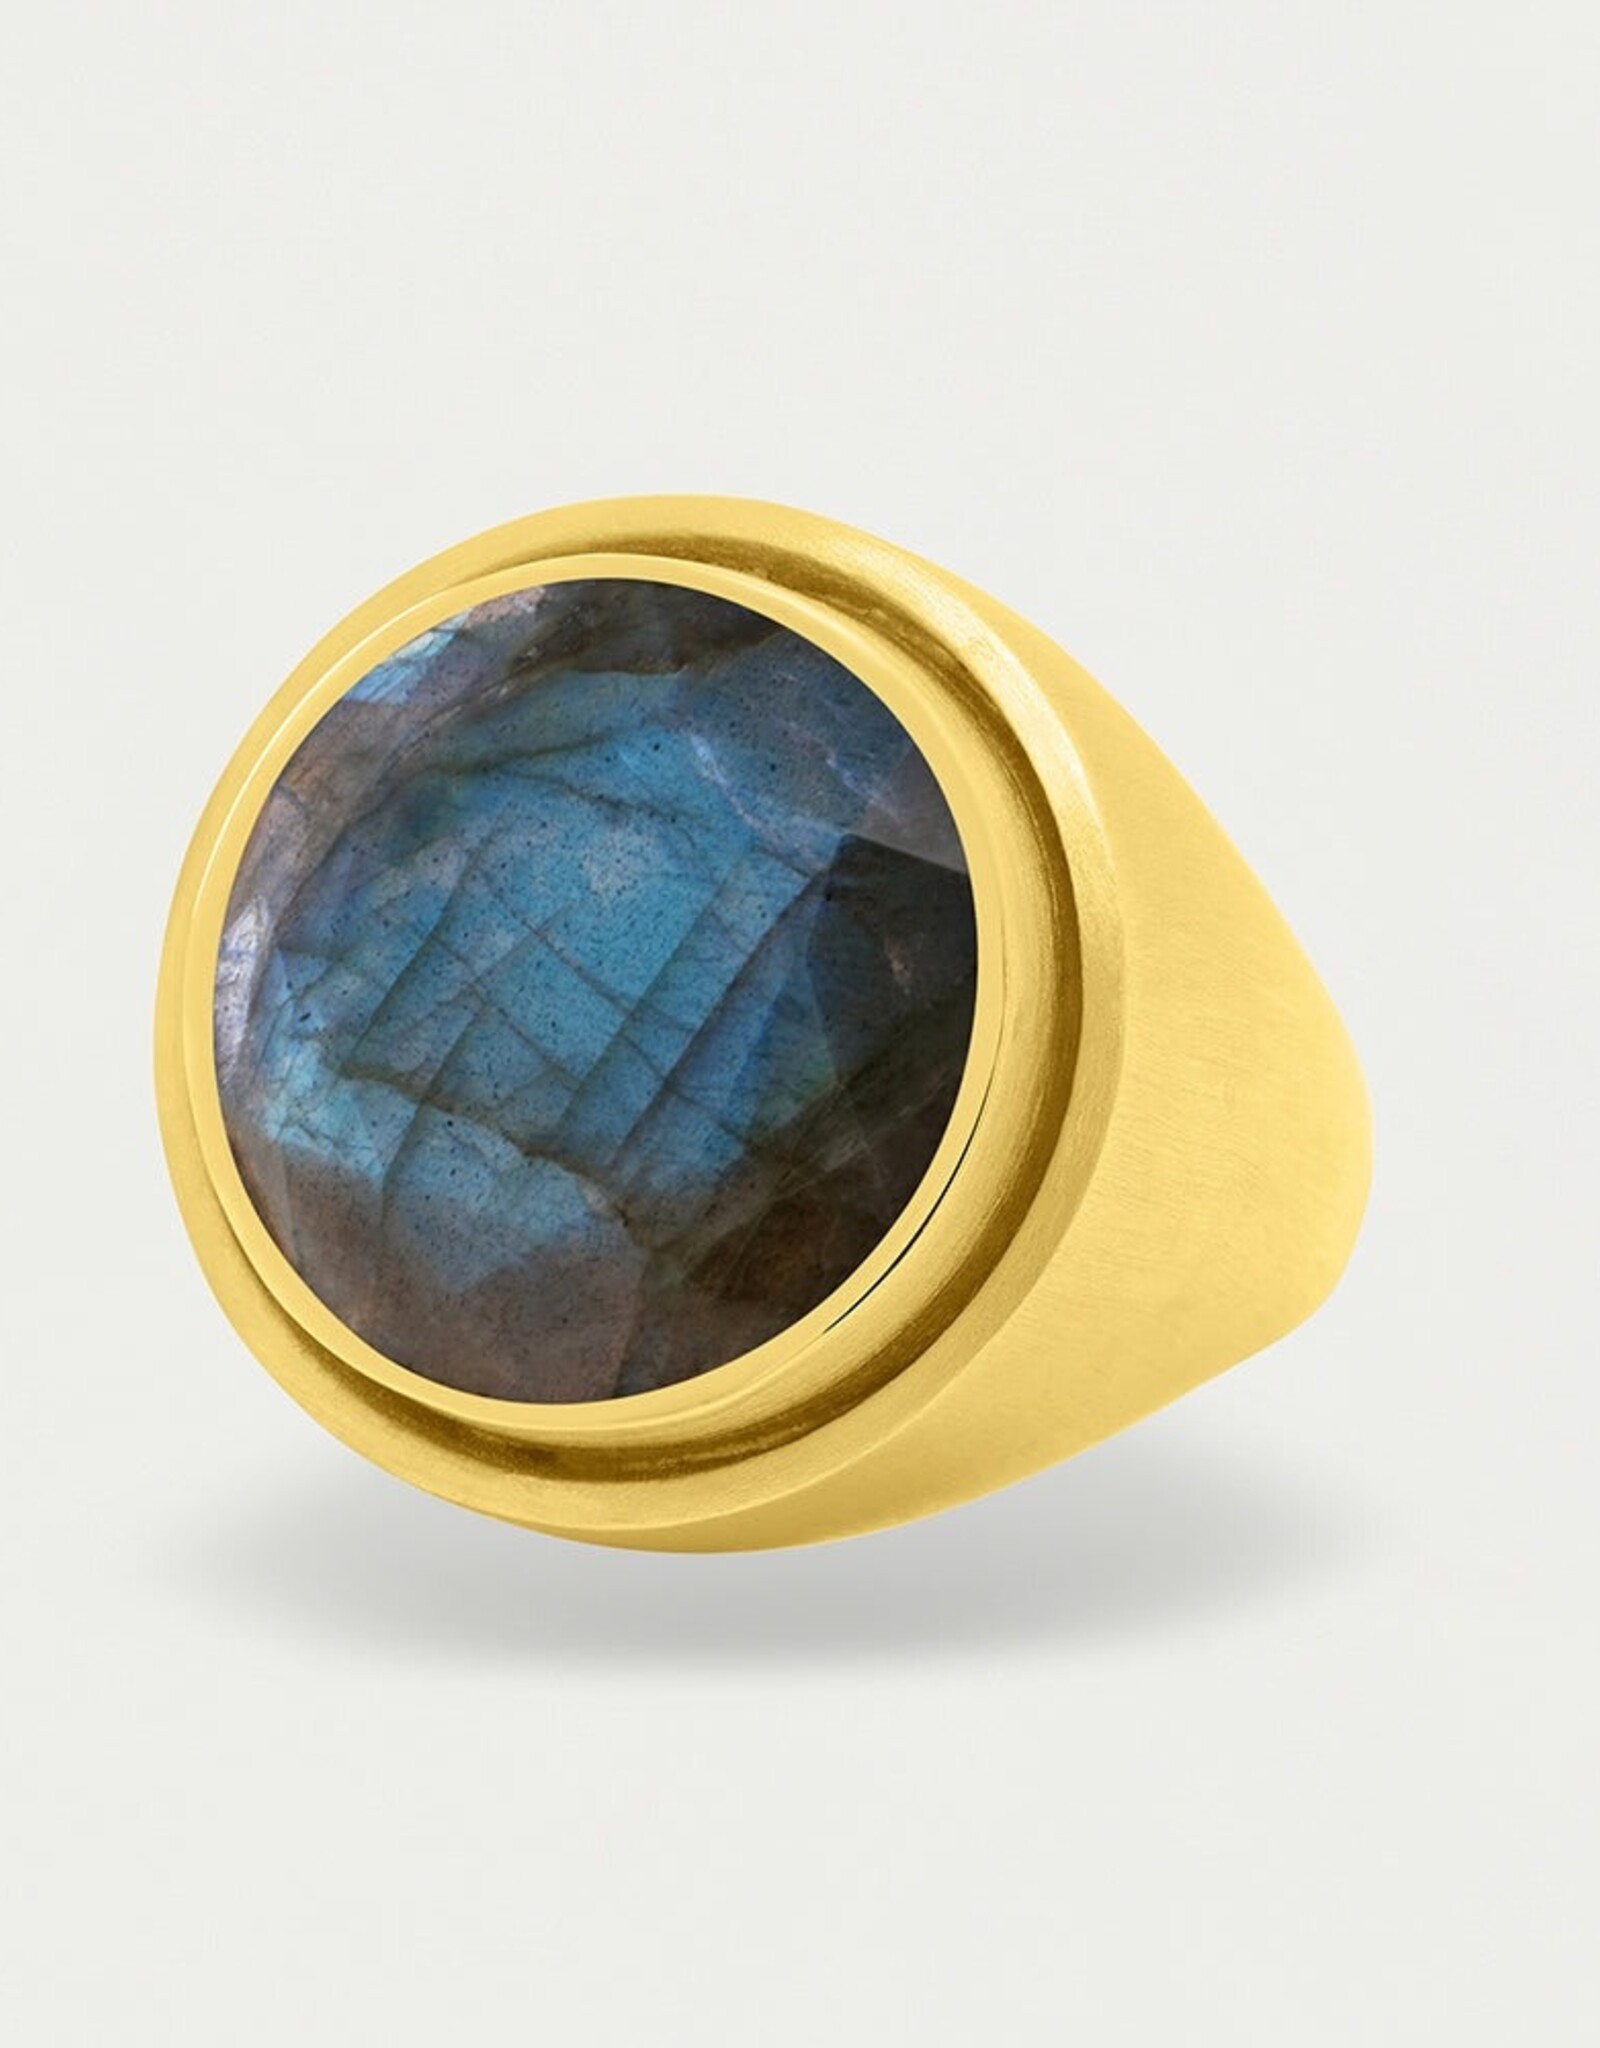 Dean Davidson Signet Ring, Labradorite and Gold